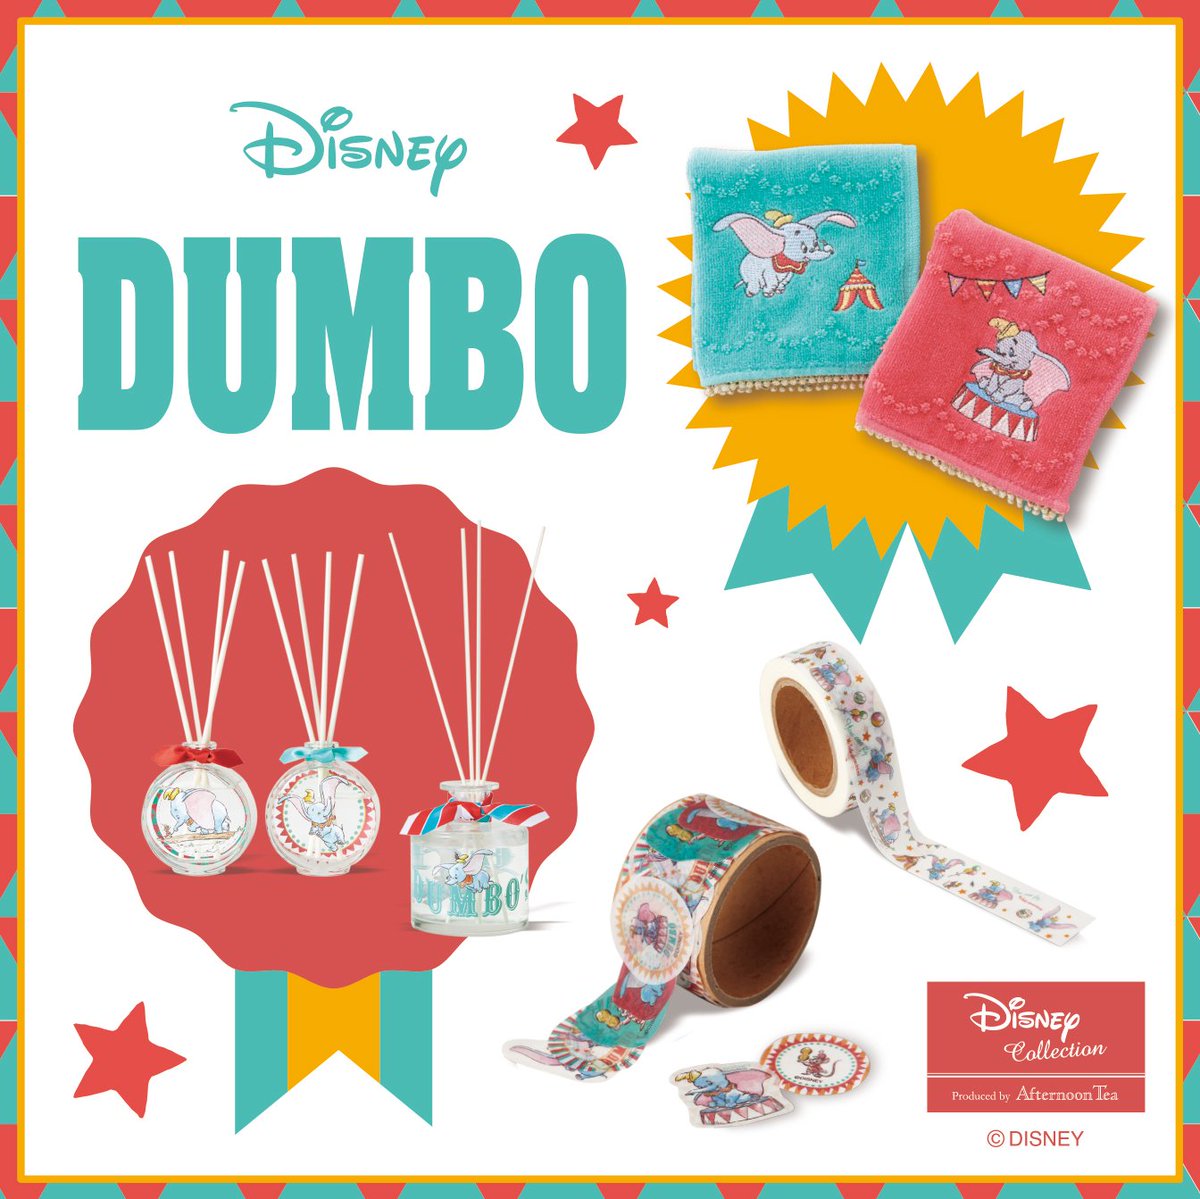 O Xrhsths Afternoon Tea Sto Twitter Disney Collection Dumbo の新商品が登場 明日 3 13 より アフタヌーンティーリビングでは サーカス をイメージした春色のアイテムが新登場 ダンボ ディズニー アフタヌーンティーコラボ T Co